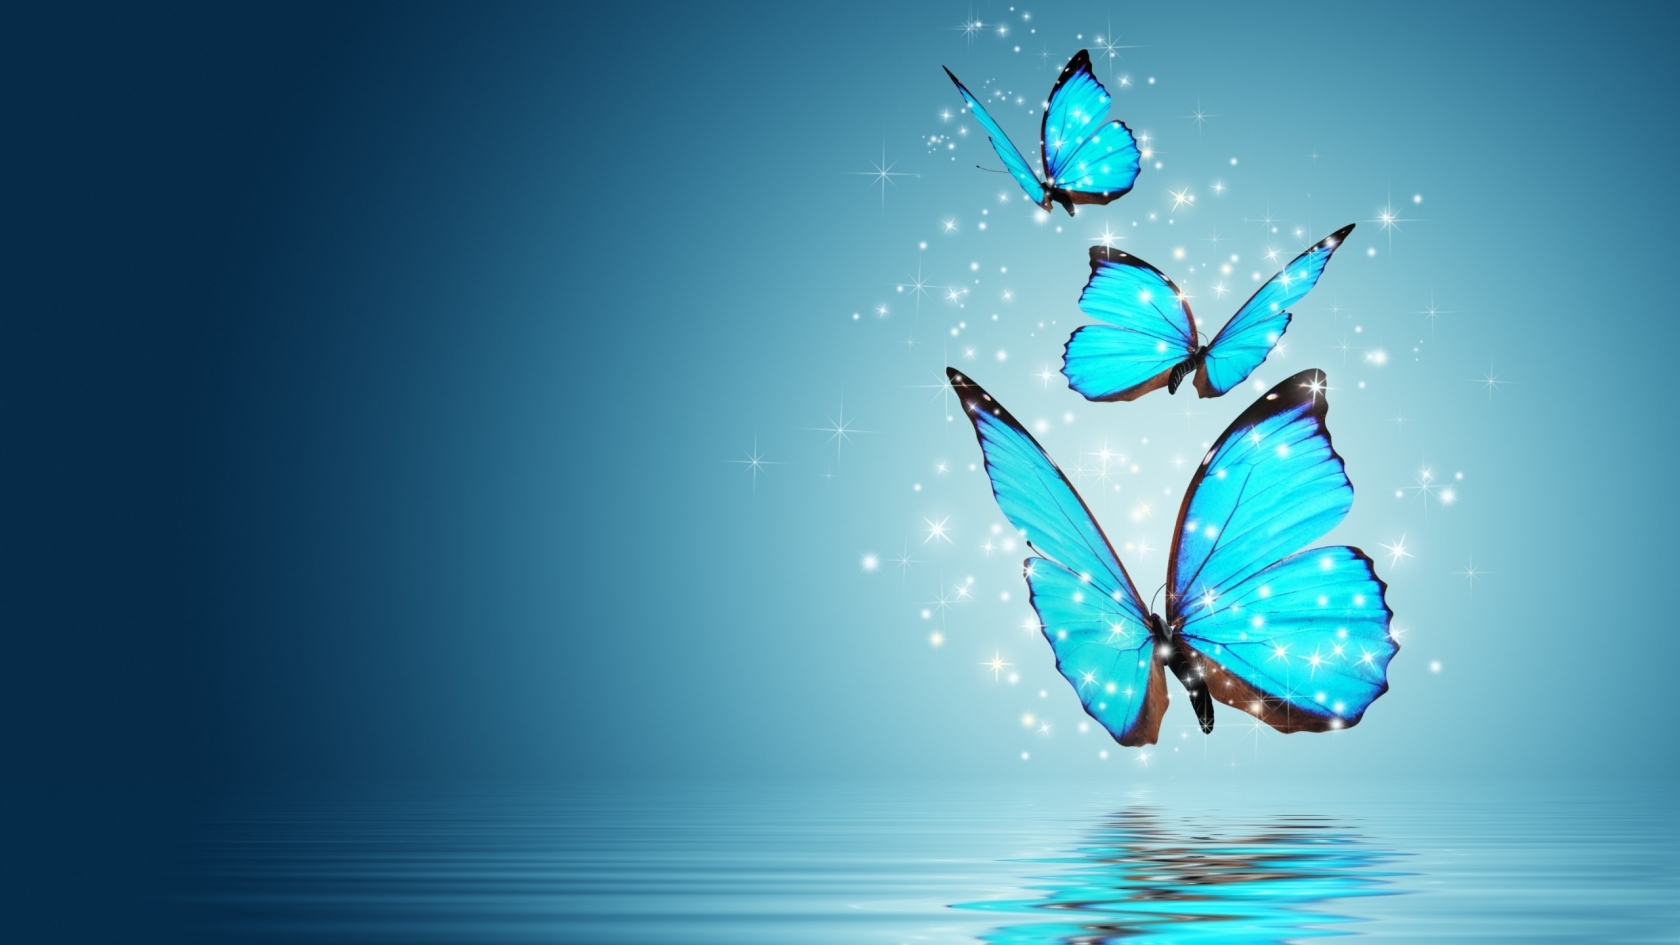 Blue Butterflies for 1680 x 945 HDTV resolution